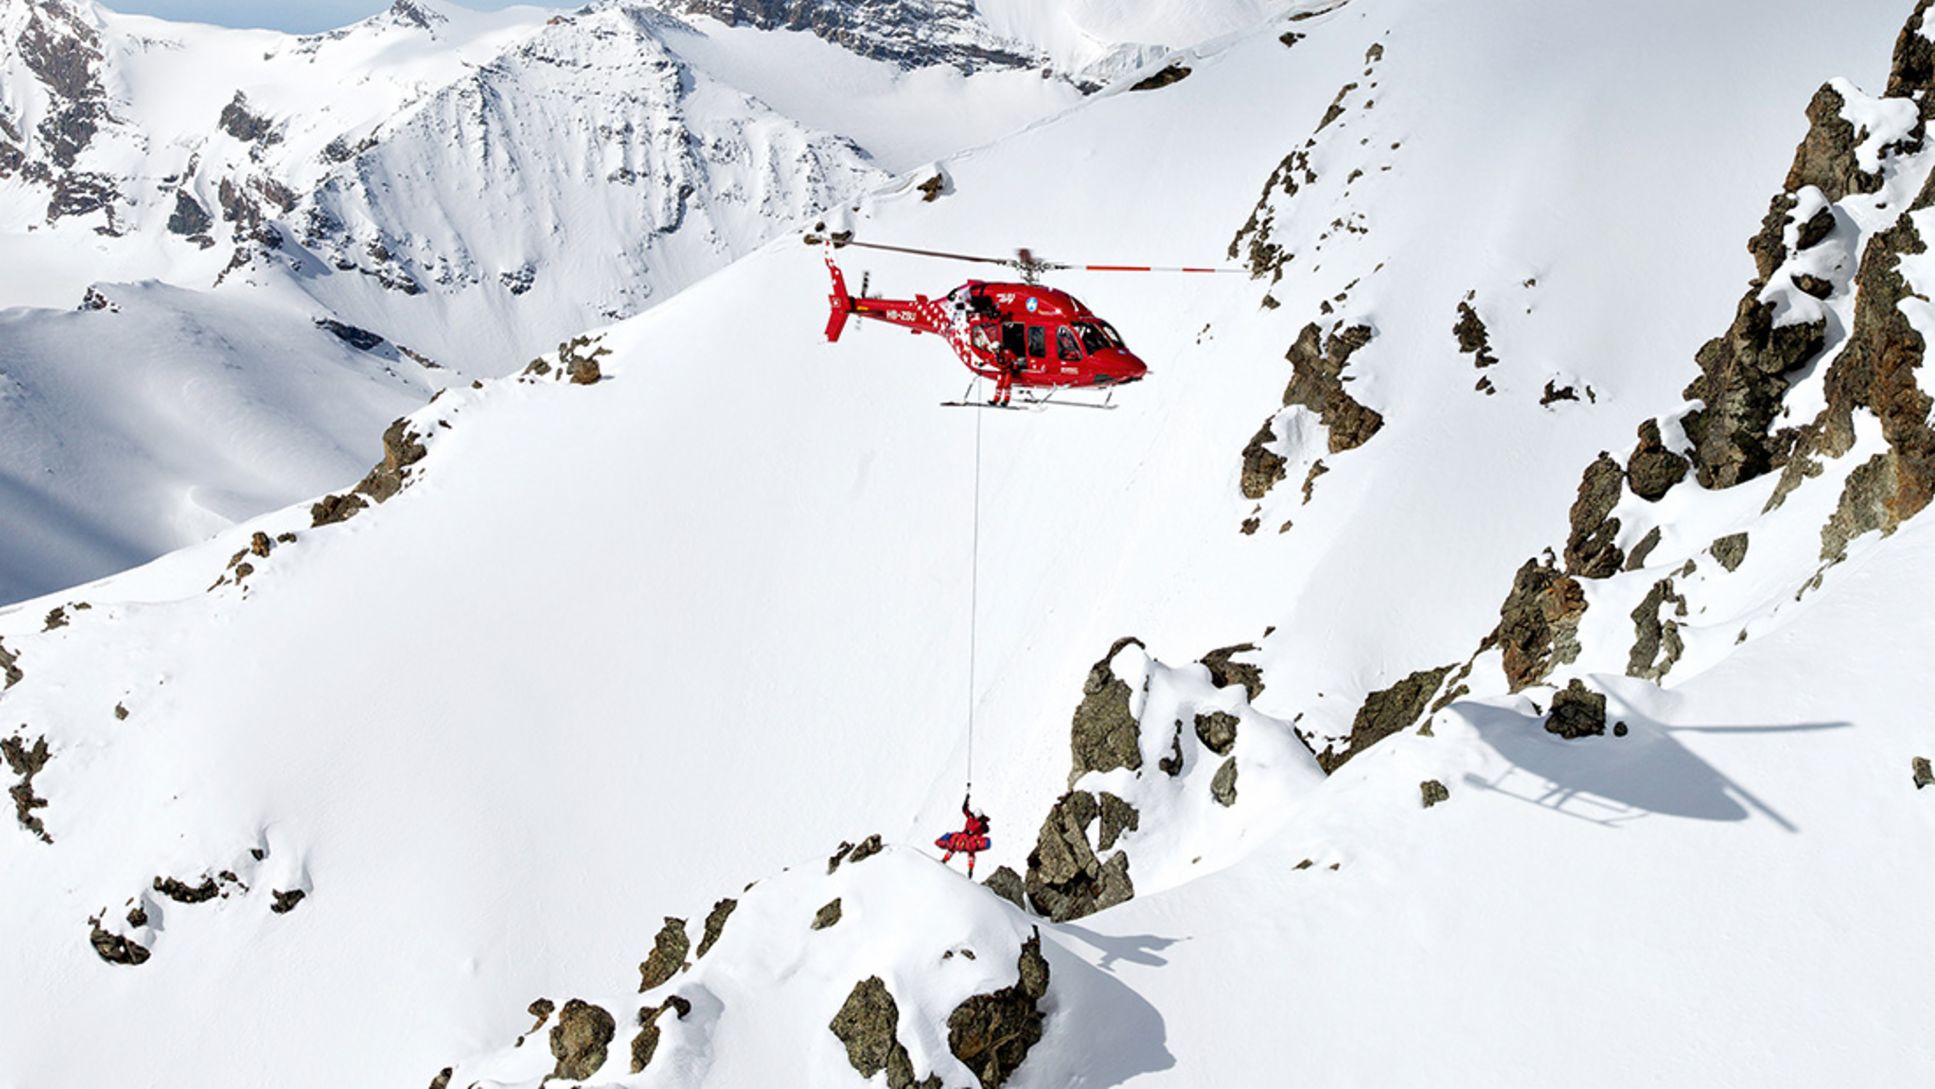 Rettungshubschrauber von Air Zermatt am Schweizer Matterhorn (Foto: Christoph Bauer)